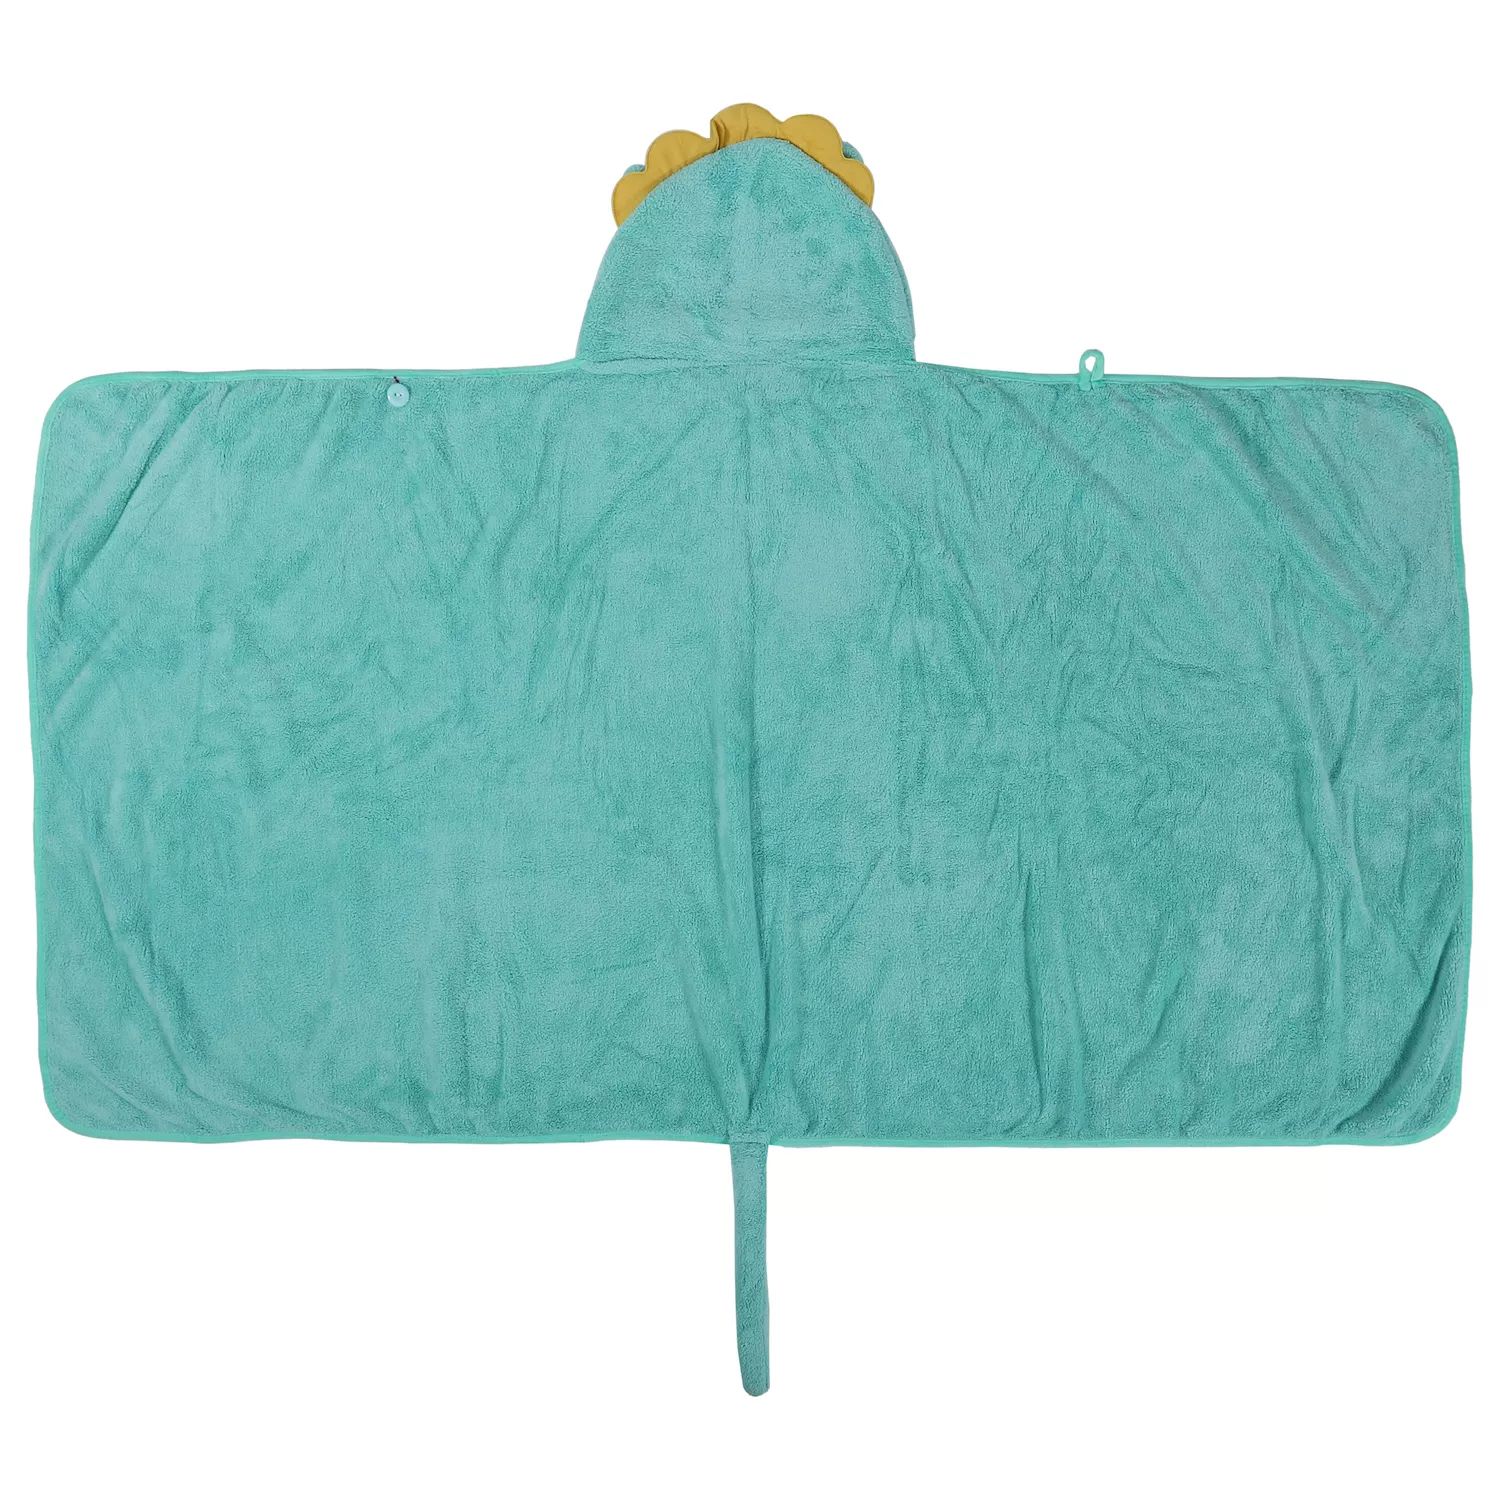 цена Мягкое впитывающее полотенце с капюшоном из кораллового флиса для ванной комнаты, светло-зеленое, 53 x 31 дюймов